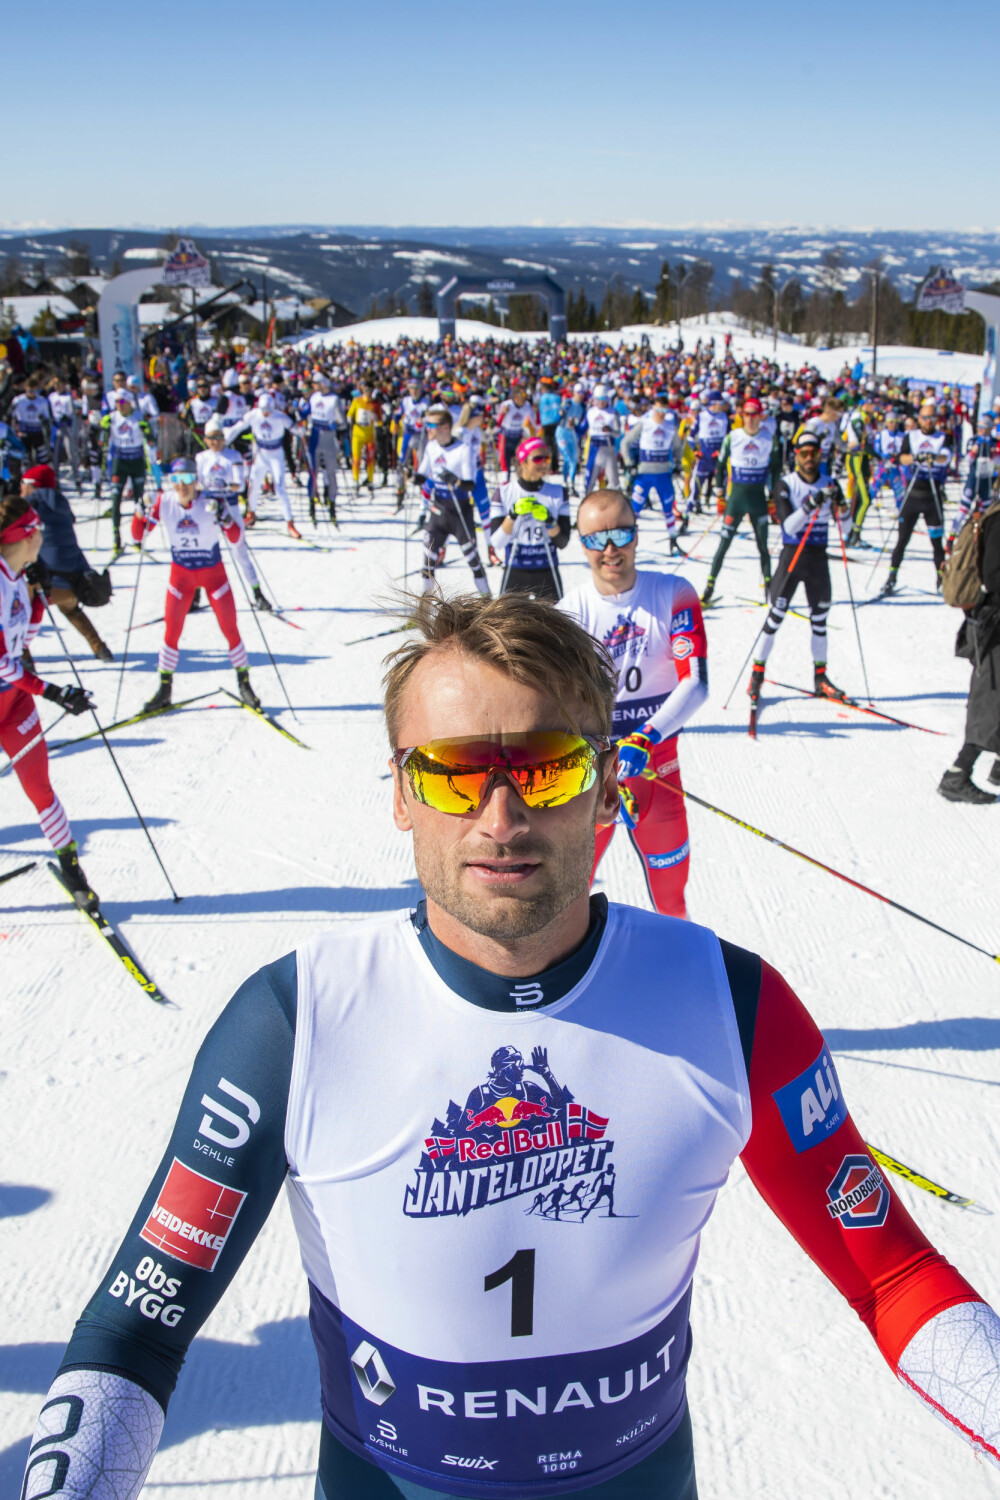 <b>EGET RENN:</b> For andre år på rad arrangerte Petter Northug skifestivalen Jante-loppet på Hafjell rett før påske. 1500 ivrige skiløpere deltok, deriblant flere verdensstjerner.  